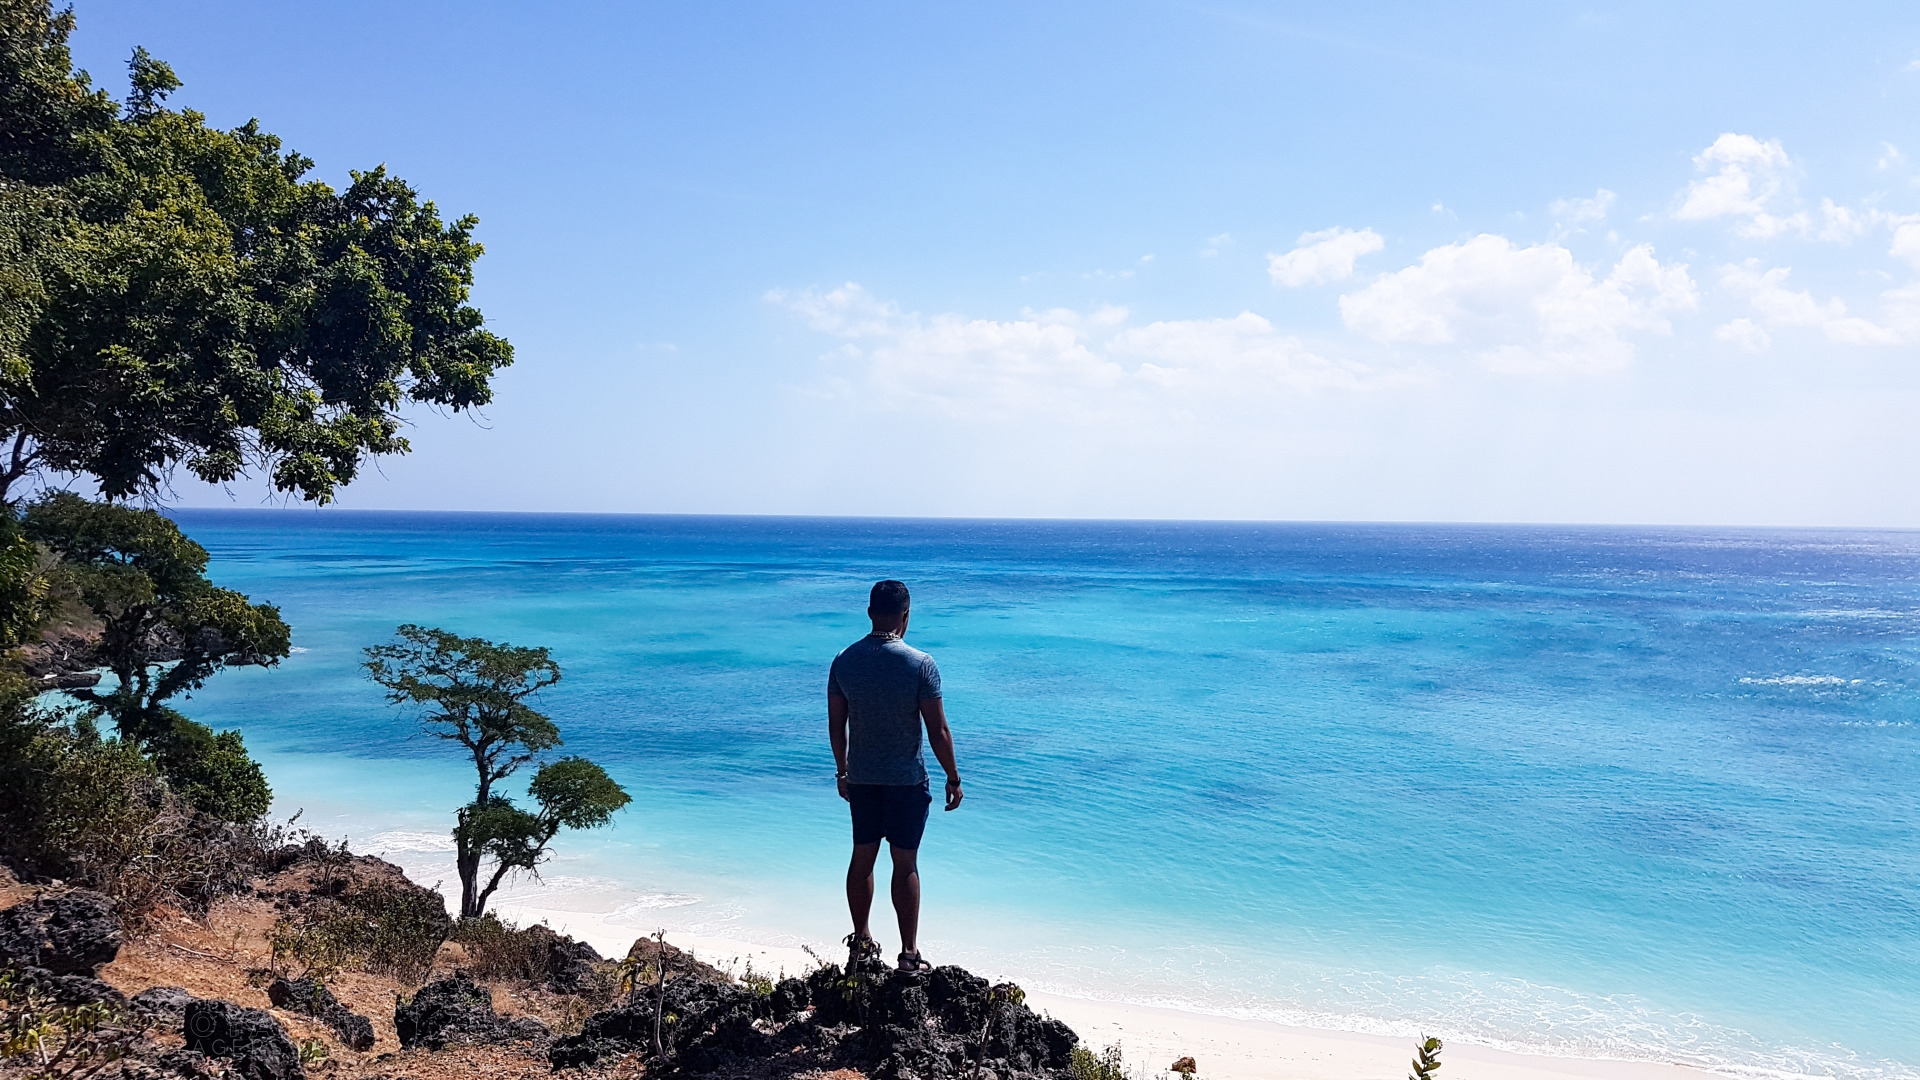 5 Pantai Cantik Yang Menjadi Surga Wisata Di Pulau Semau